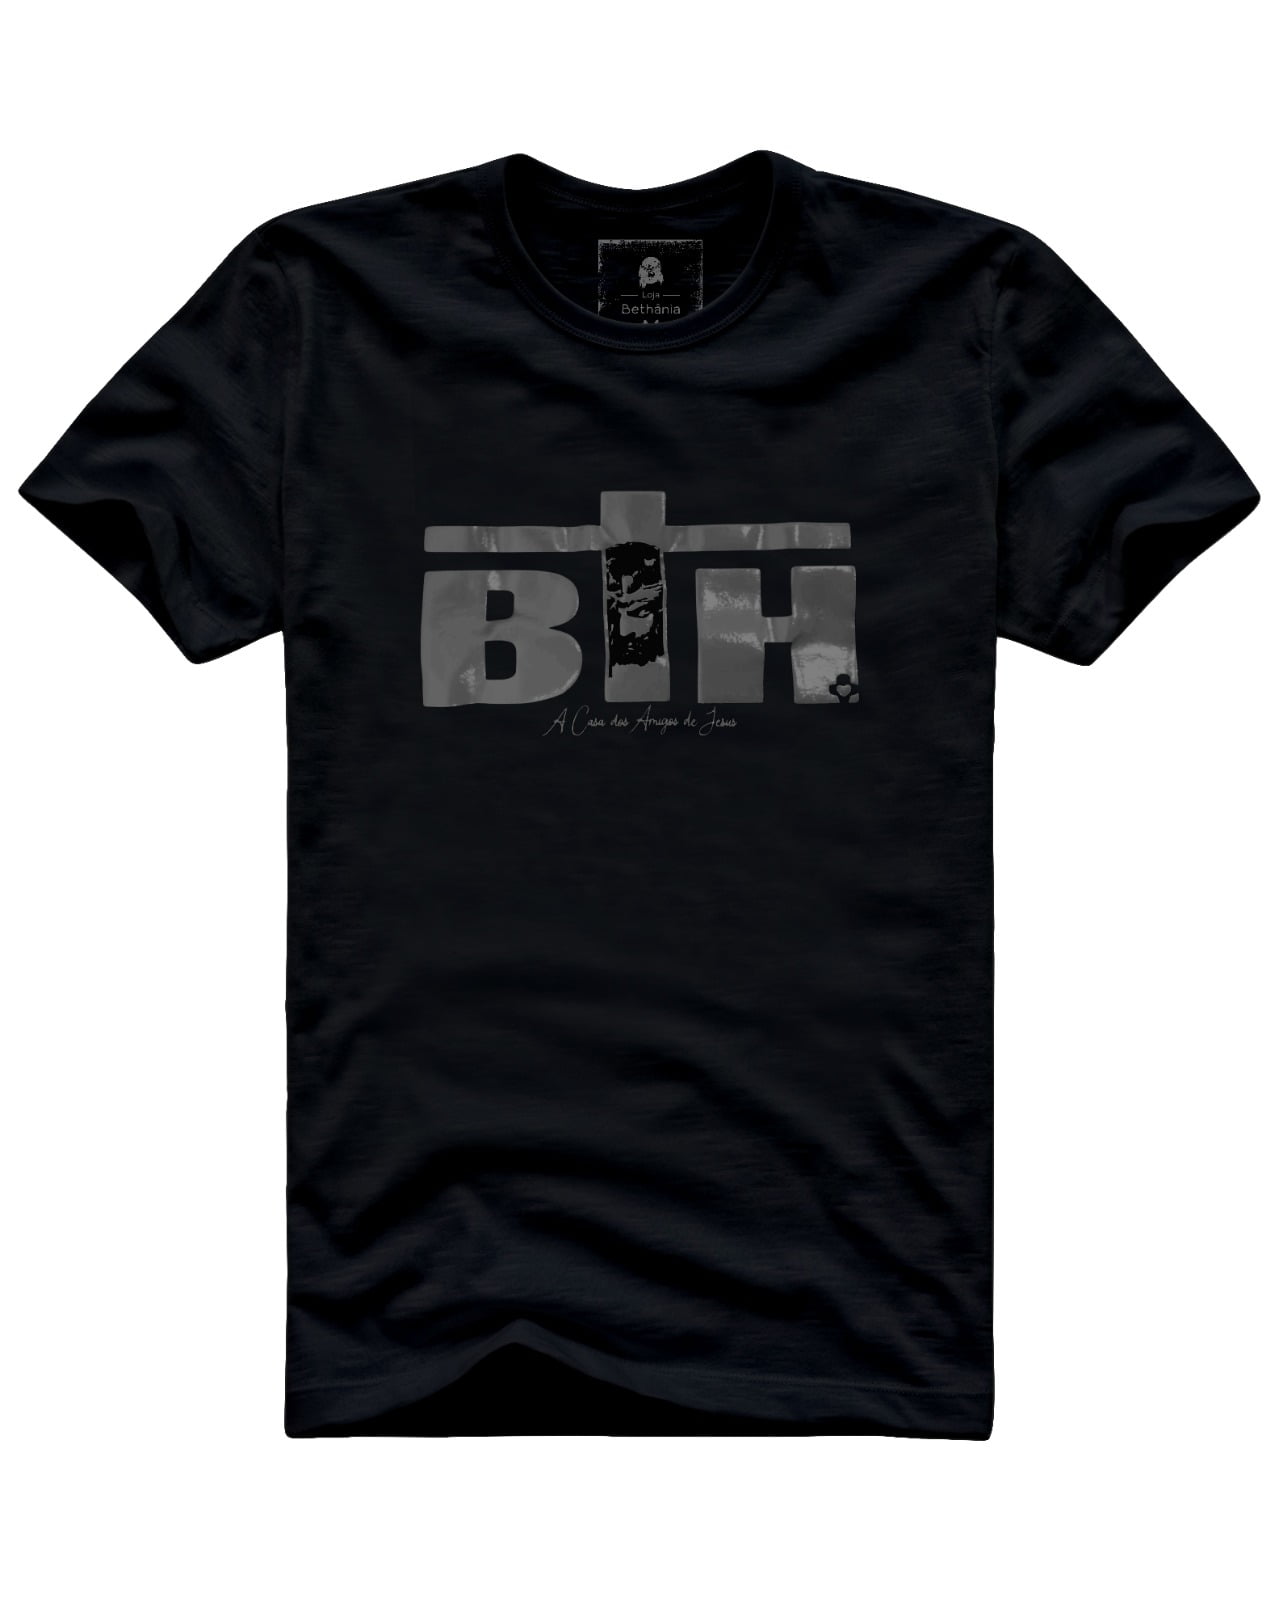 Camiseta BTH - A Casa dos Amigos de Jesus